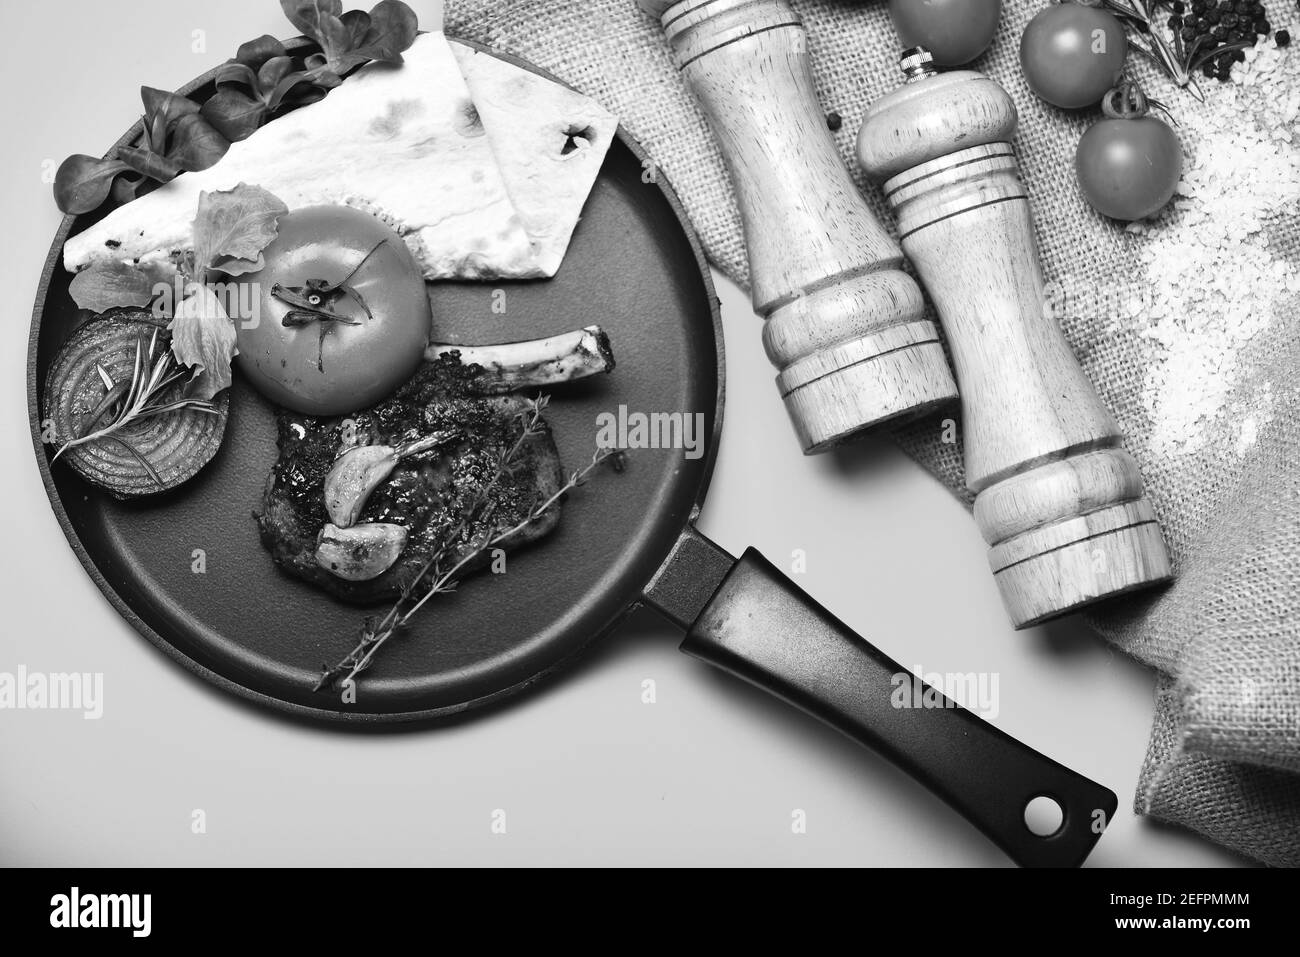 Steak rôti à la tomate, pain plat et oignon grillé. Concept de cuisine traditionnelle. Plat américain près de la boîte aux grains et de la cave à sel. Côtes de porc ou d'agneau avec décor sur poêle, fond jaune. Banque D'Images